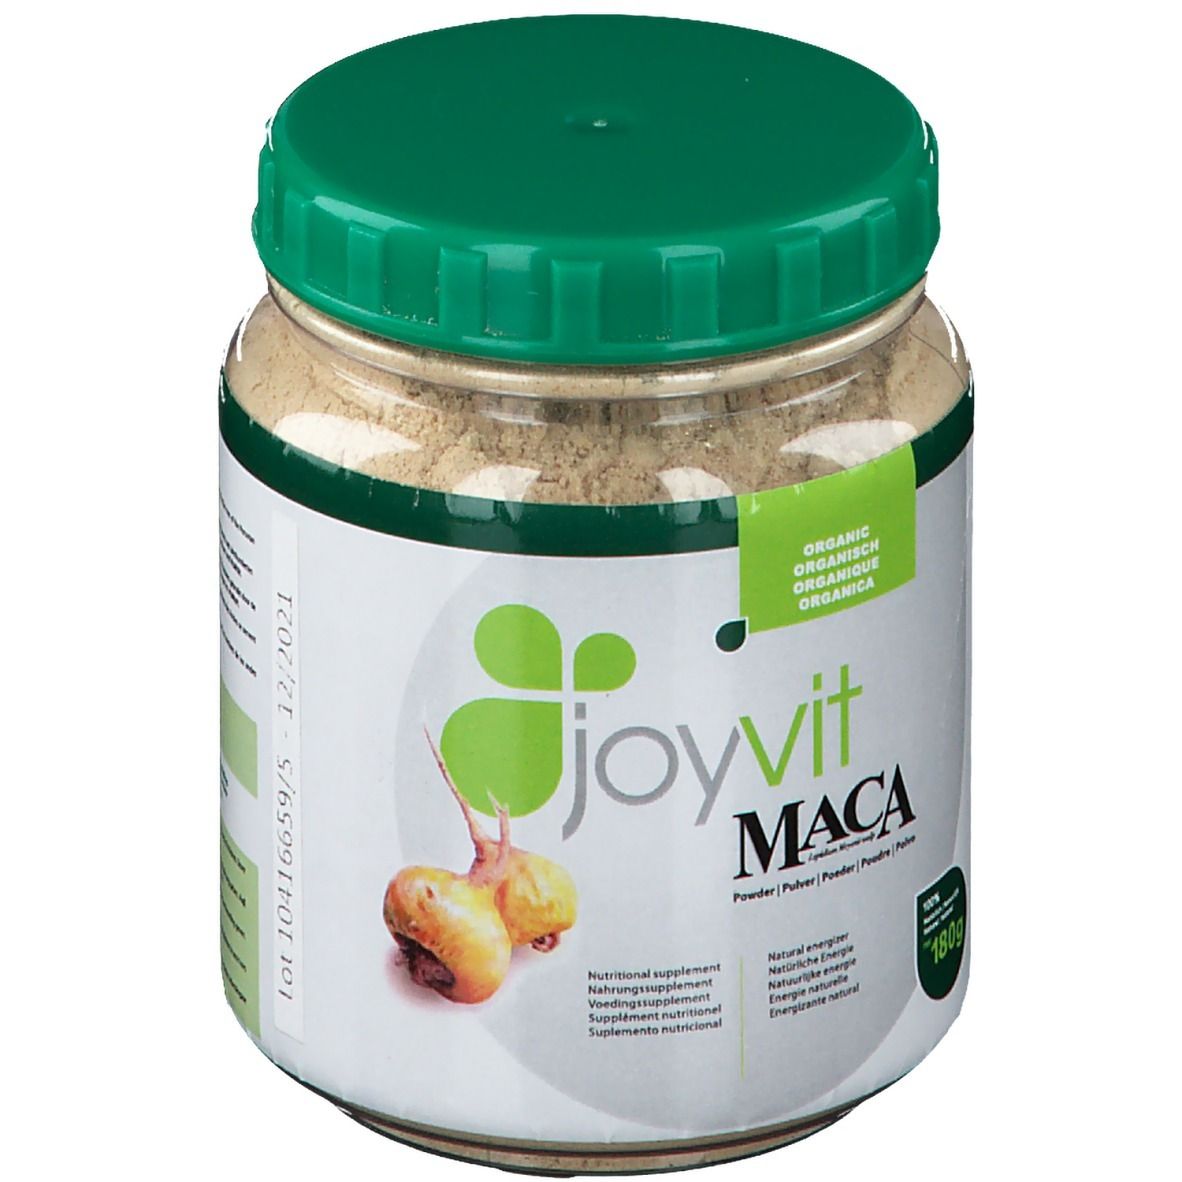 Joyvit® Maca poudre